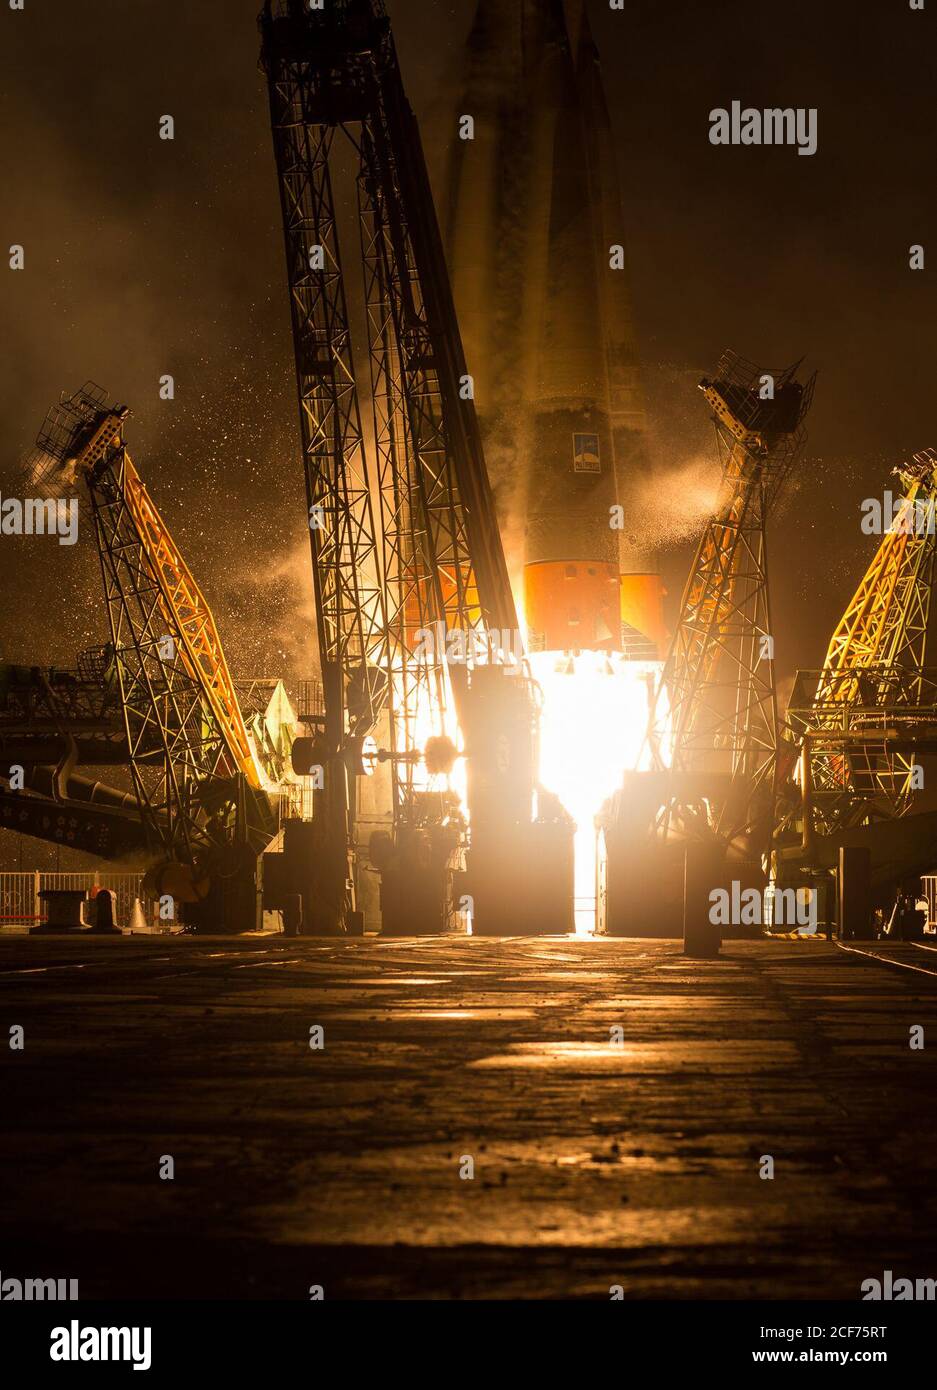 El cohete Soyuz TMA-20M se lanza desde el Cosmódromo de Baikonur en Kazajstán el sábado 19 de marzo de 2016 llevando la expedición 47 el Comandante de Soyuz Alexey Ovchinin de Roscosmos, Ingeniero de Vuelo Jeff Williams de la NASA, Y el ingeniero de vuelo Oleg Skripochka de Roscosmos comenzó su misión de cinco meses y medio en la Estación Espacial Internacional. (Crédito de la foto: NASA/Aubrey Gemignani) Foto de stock